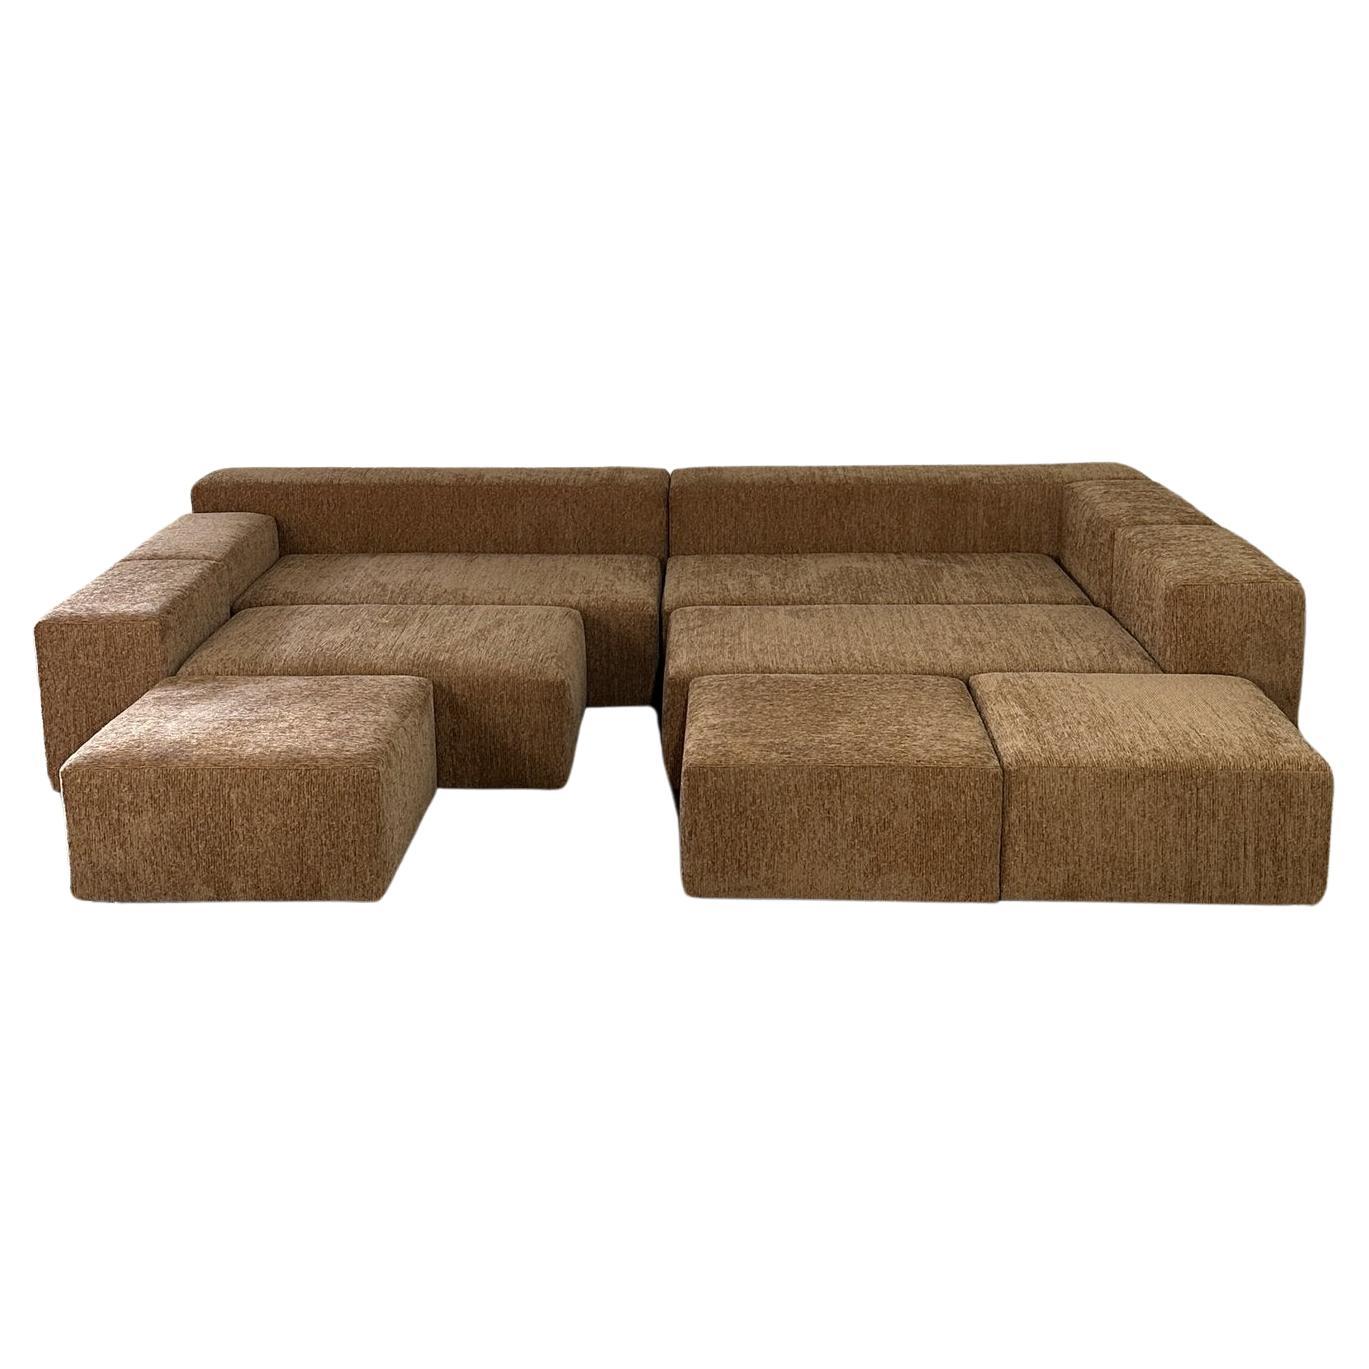 Sayulita Modular Sofa - Made to Order For Sale